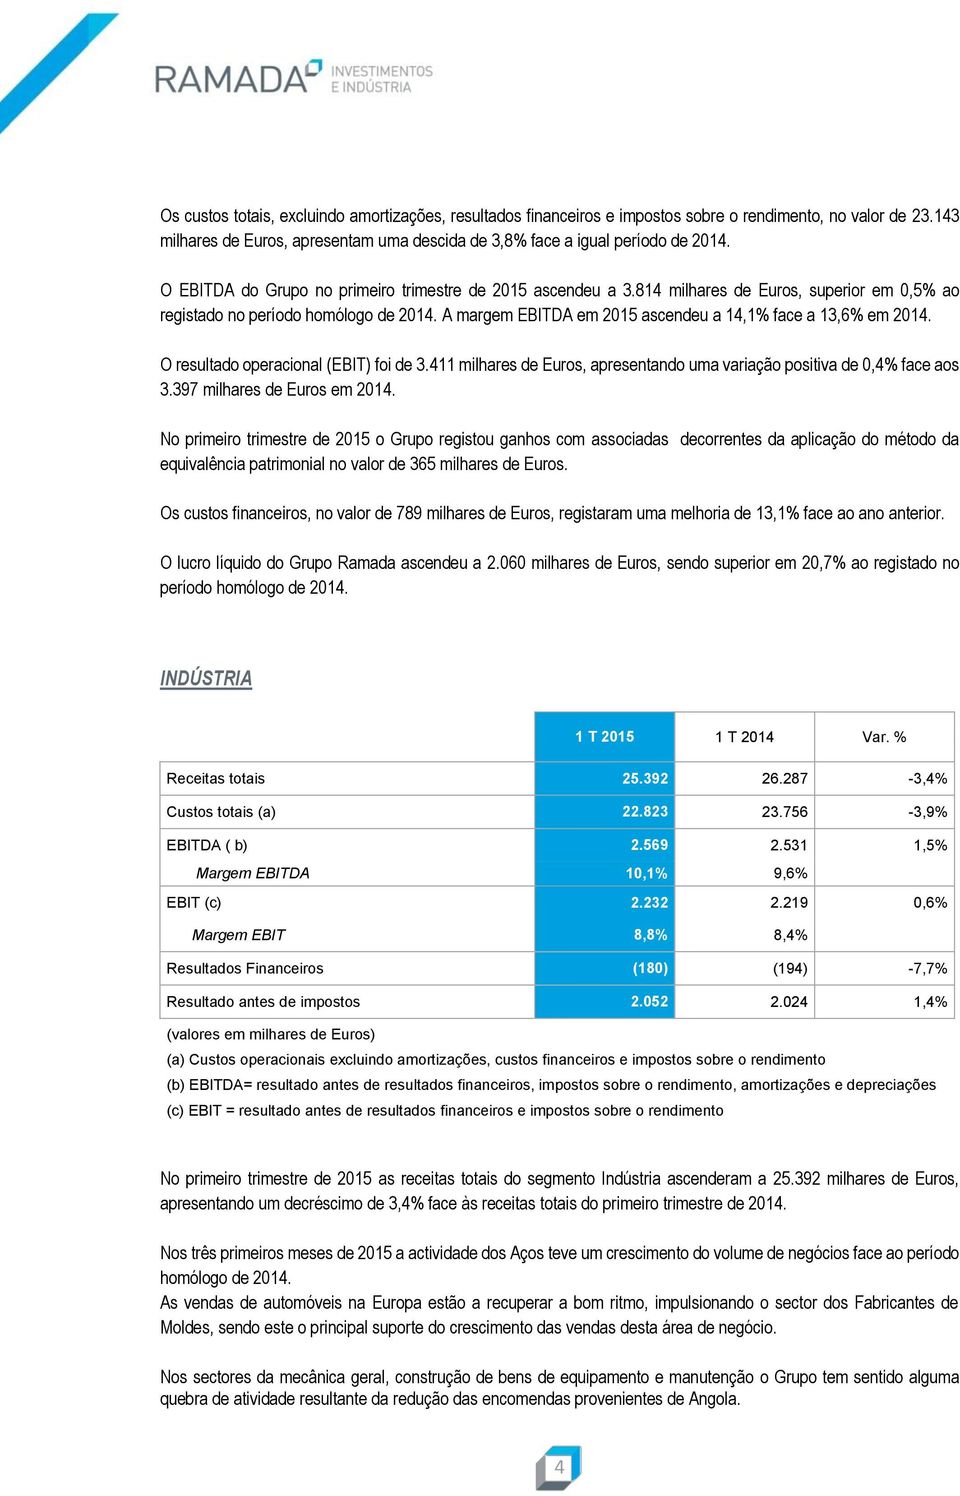 A margem EBITDA em 2015 ascendeu a 14,1% face a 13,6% em 2014. O resultado operacional (EBIT) foi de 3.411 milhares de Euros, apresentando uma variação positiva de 0,4% face aos 3.